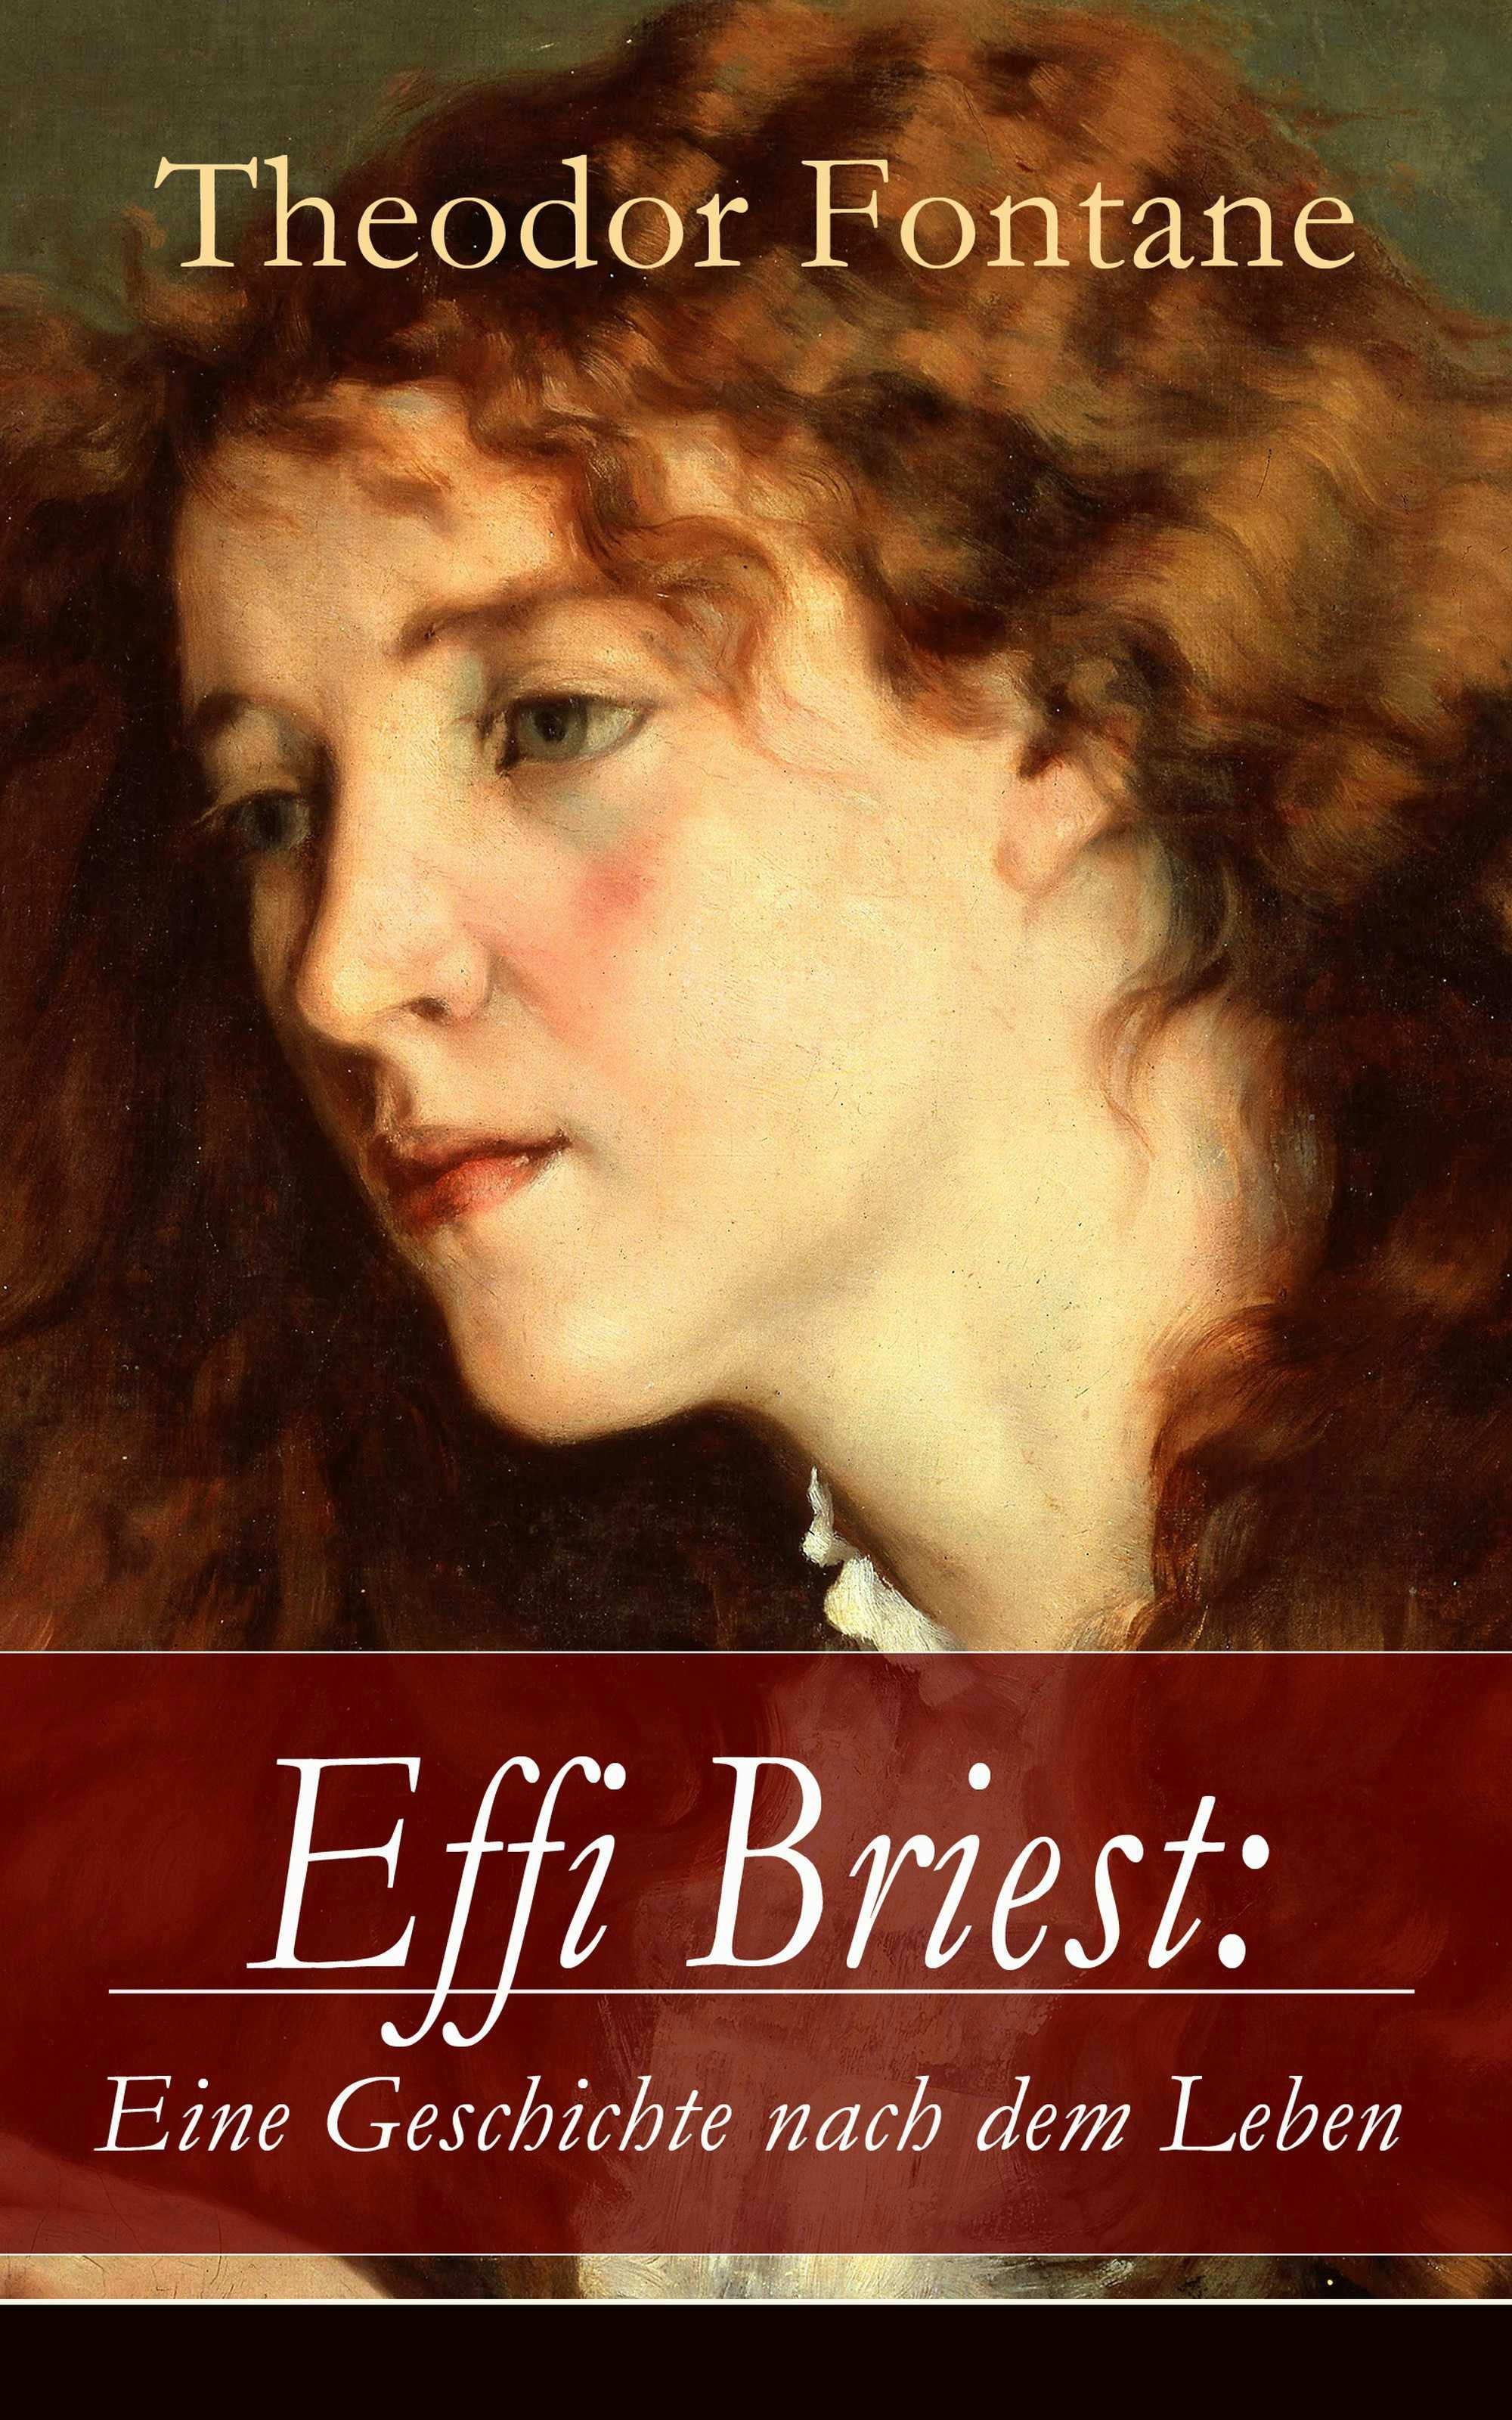 Effi Briest: Eine Geschichte nach dem Leben: Der berühmte Gesellschaftsroman beruht auf wahren begebenheiten - undefined